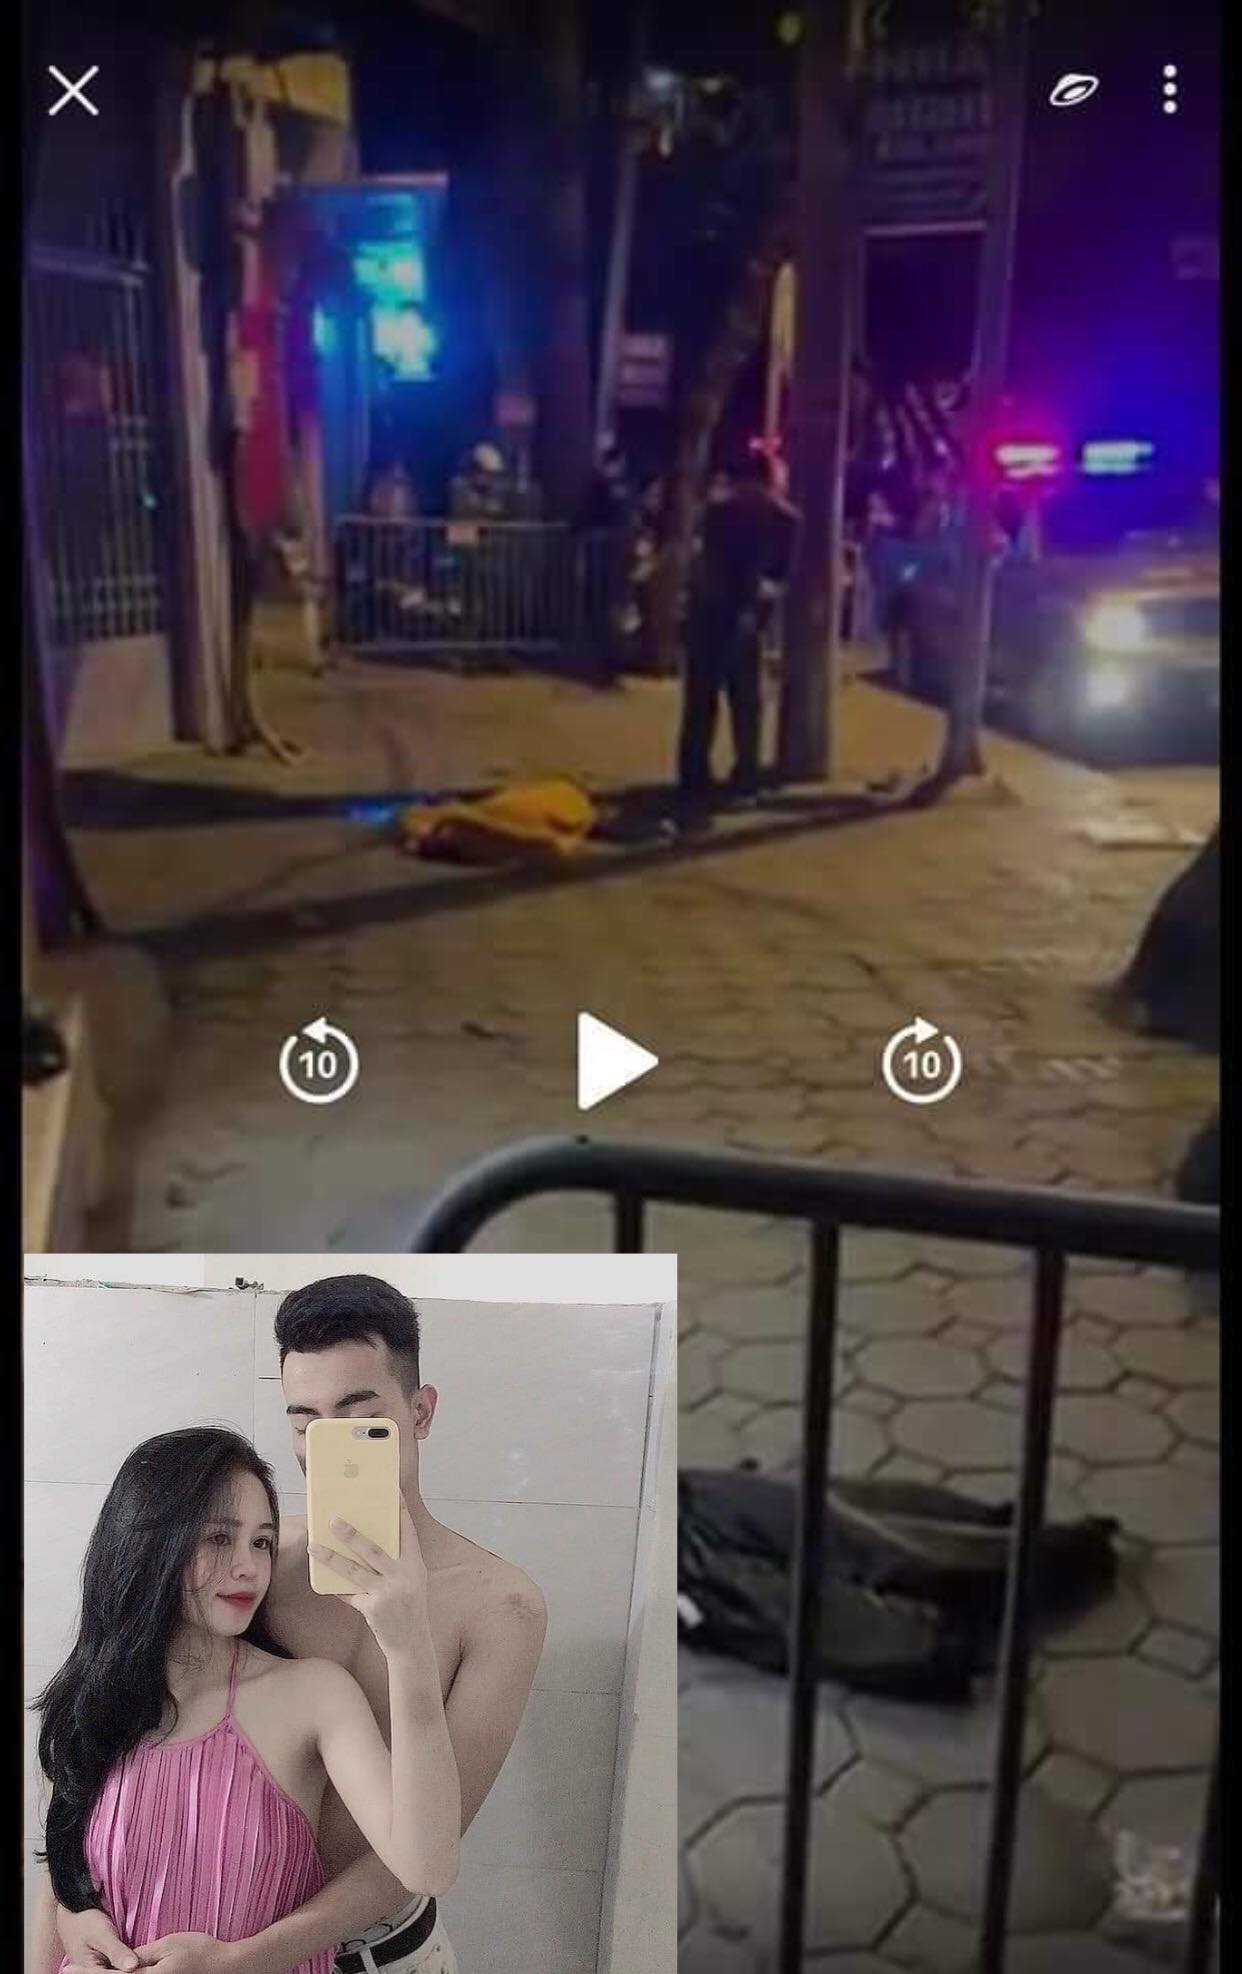 Full video Chàng trai đâm nhiều nhát vào người cô gái khiến nạn nhân tử vong ngay tại chỗ 13/1/2023